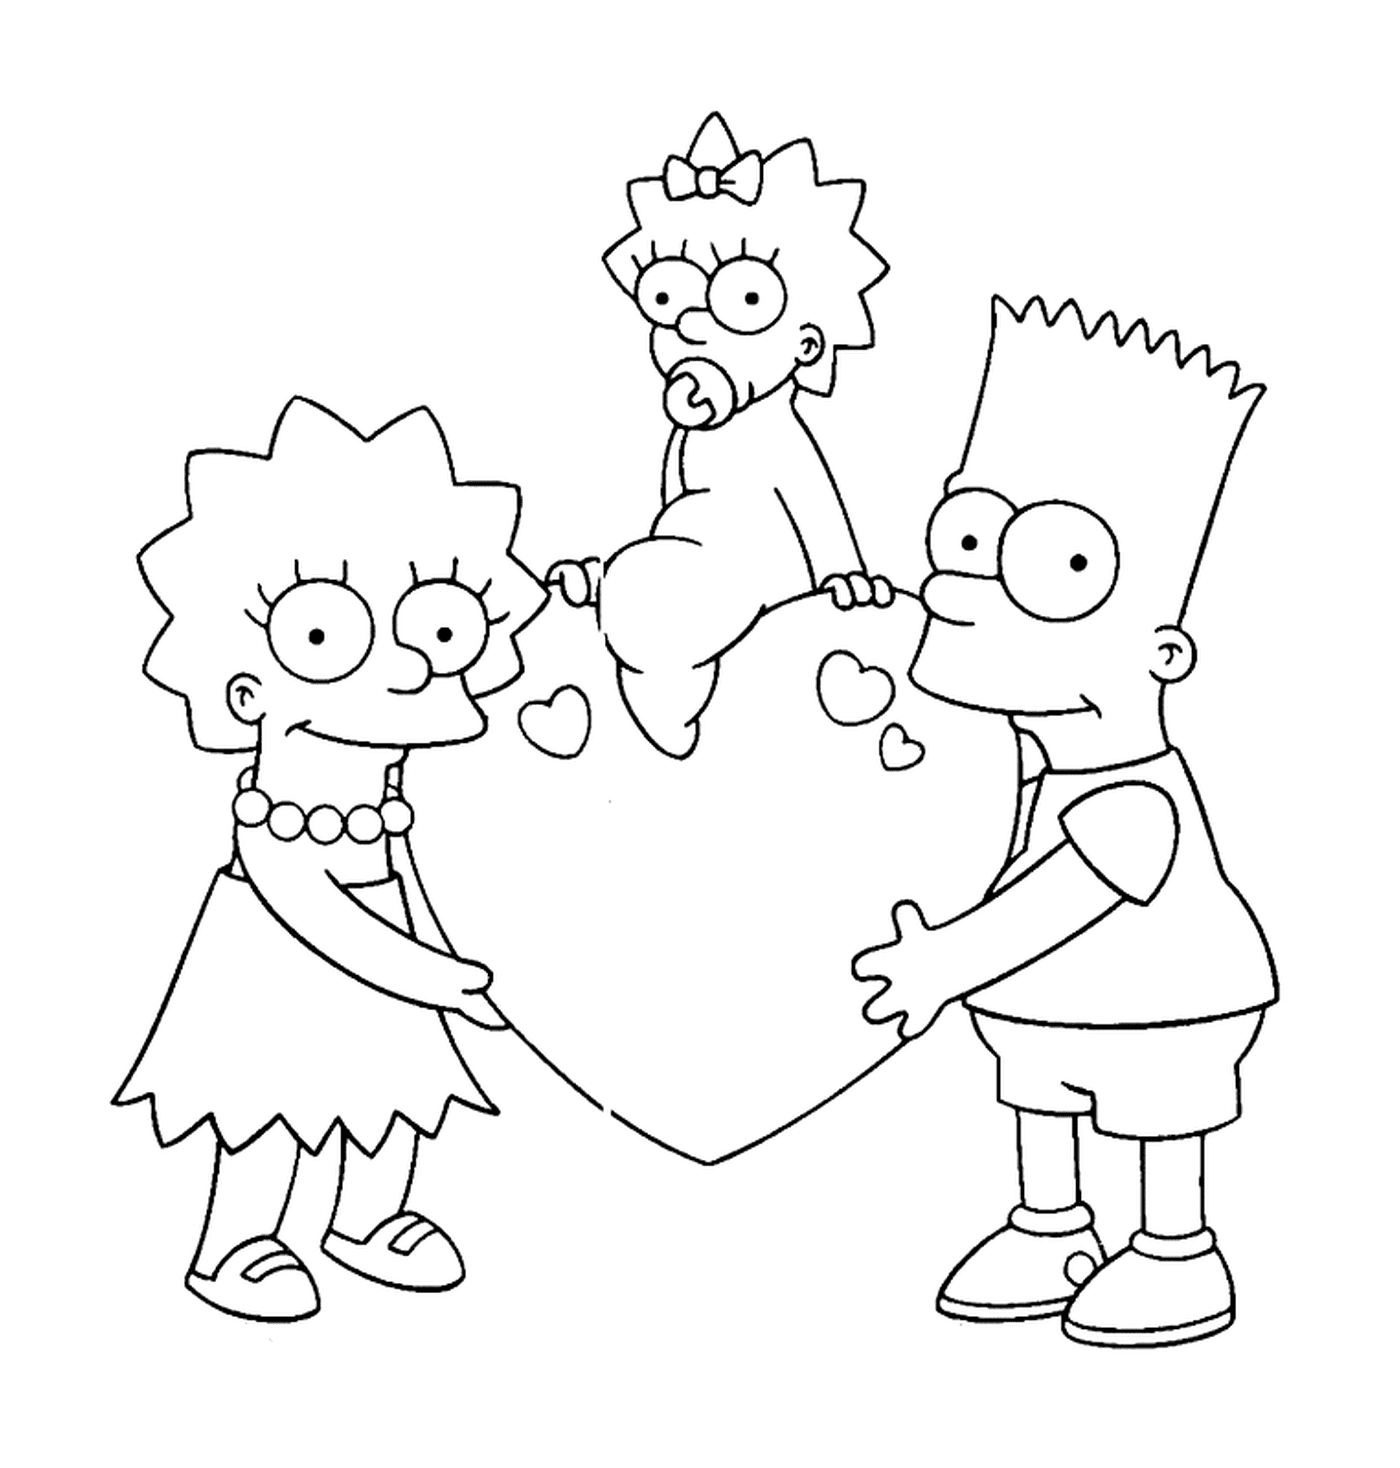  Симпсоны держали сердце с Мэгги 